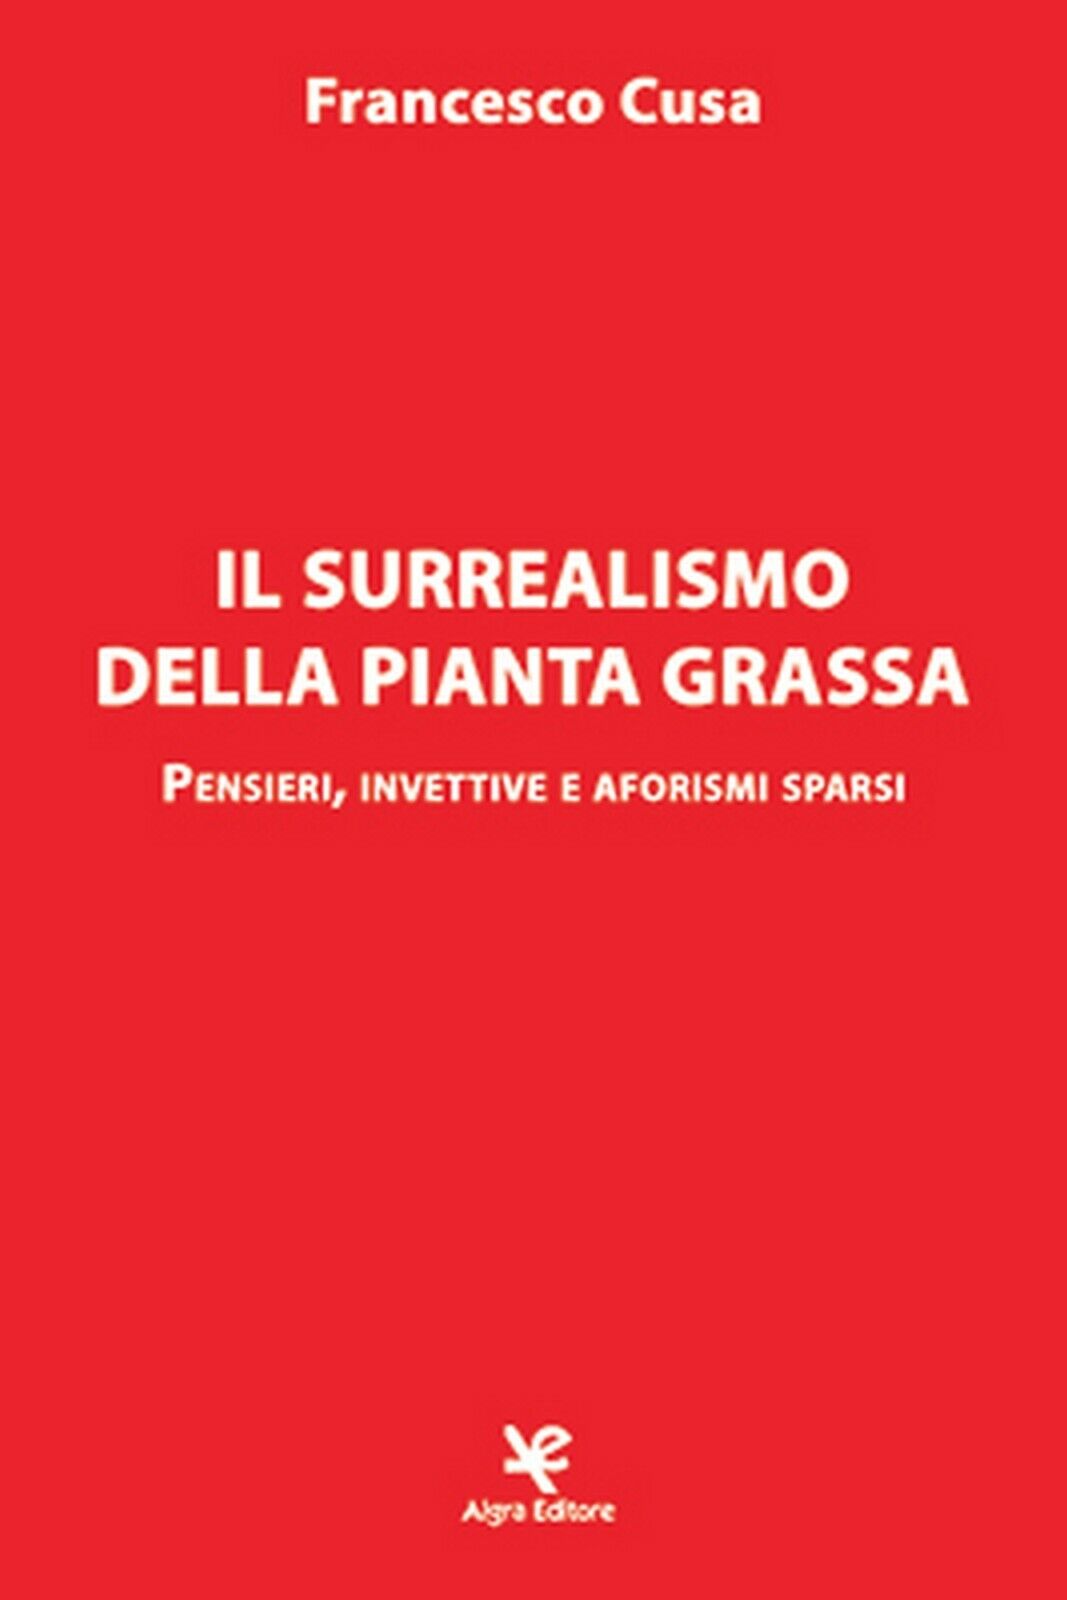 Il surrealismo della pianta grassa  di Francesco Cusa,  Algra Editore